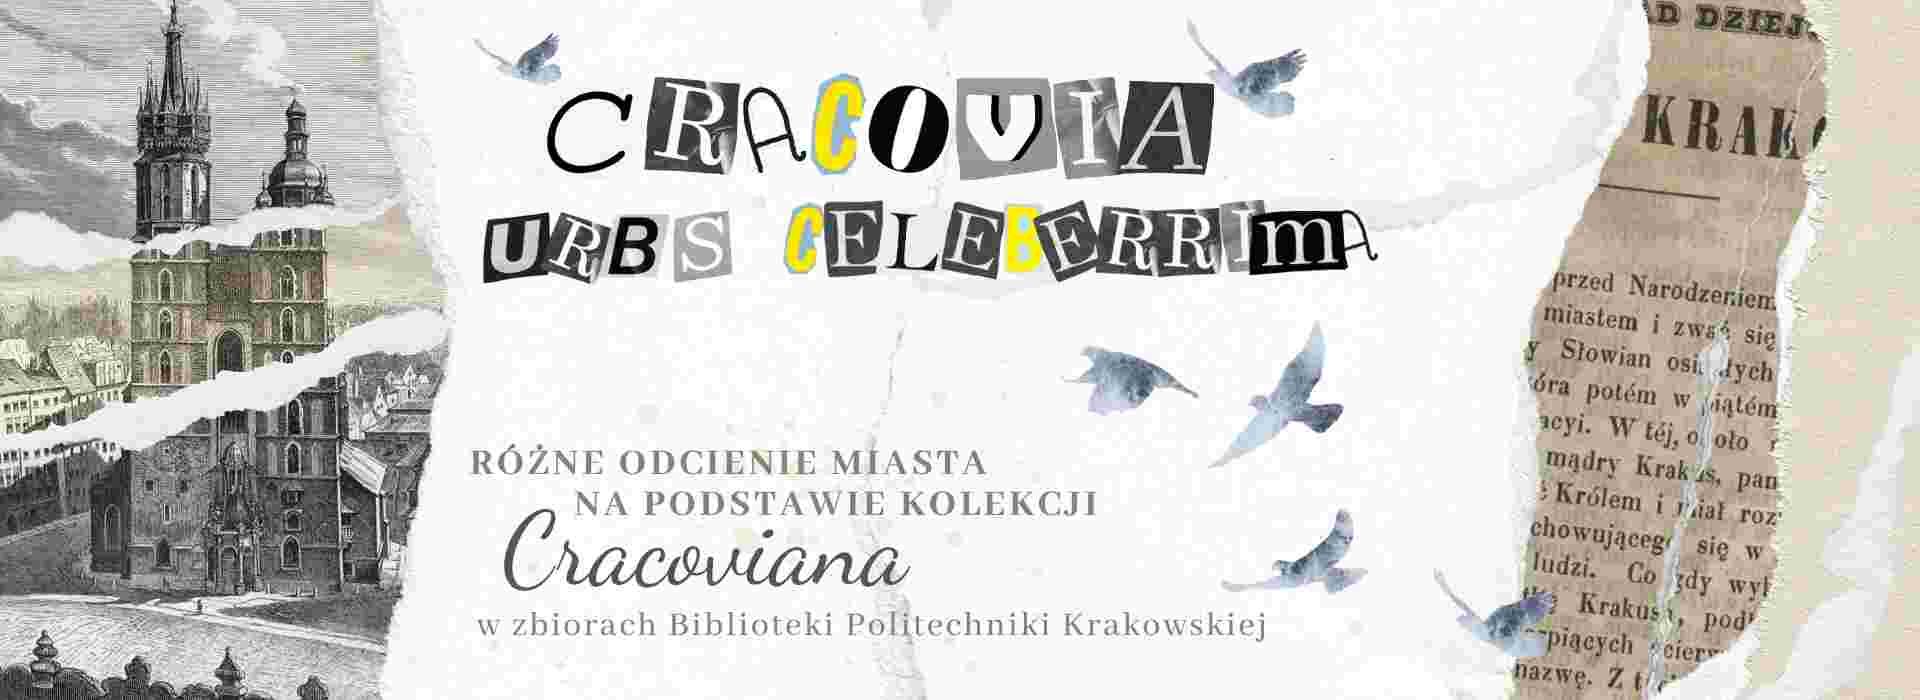 Cracovia Urbs Celeberrima